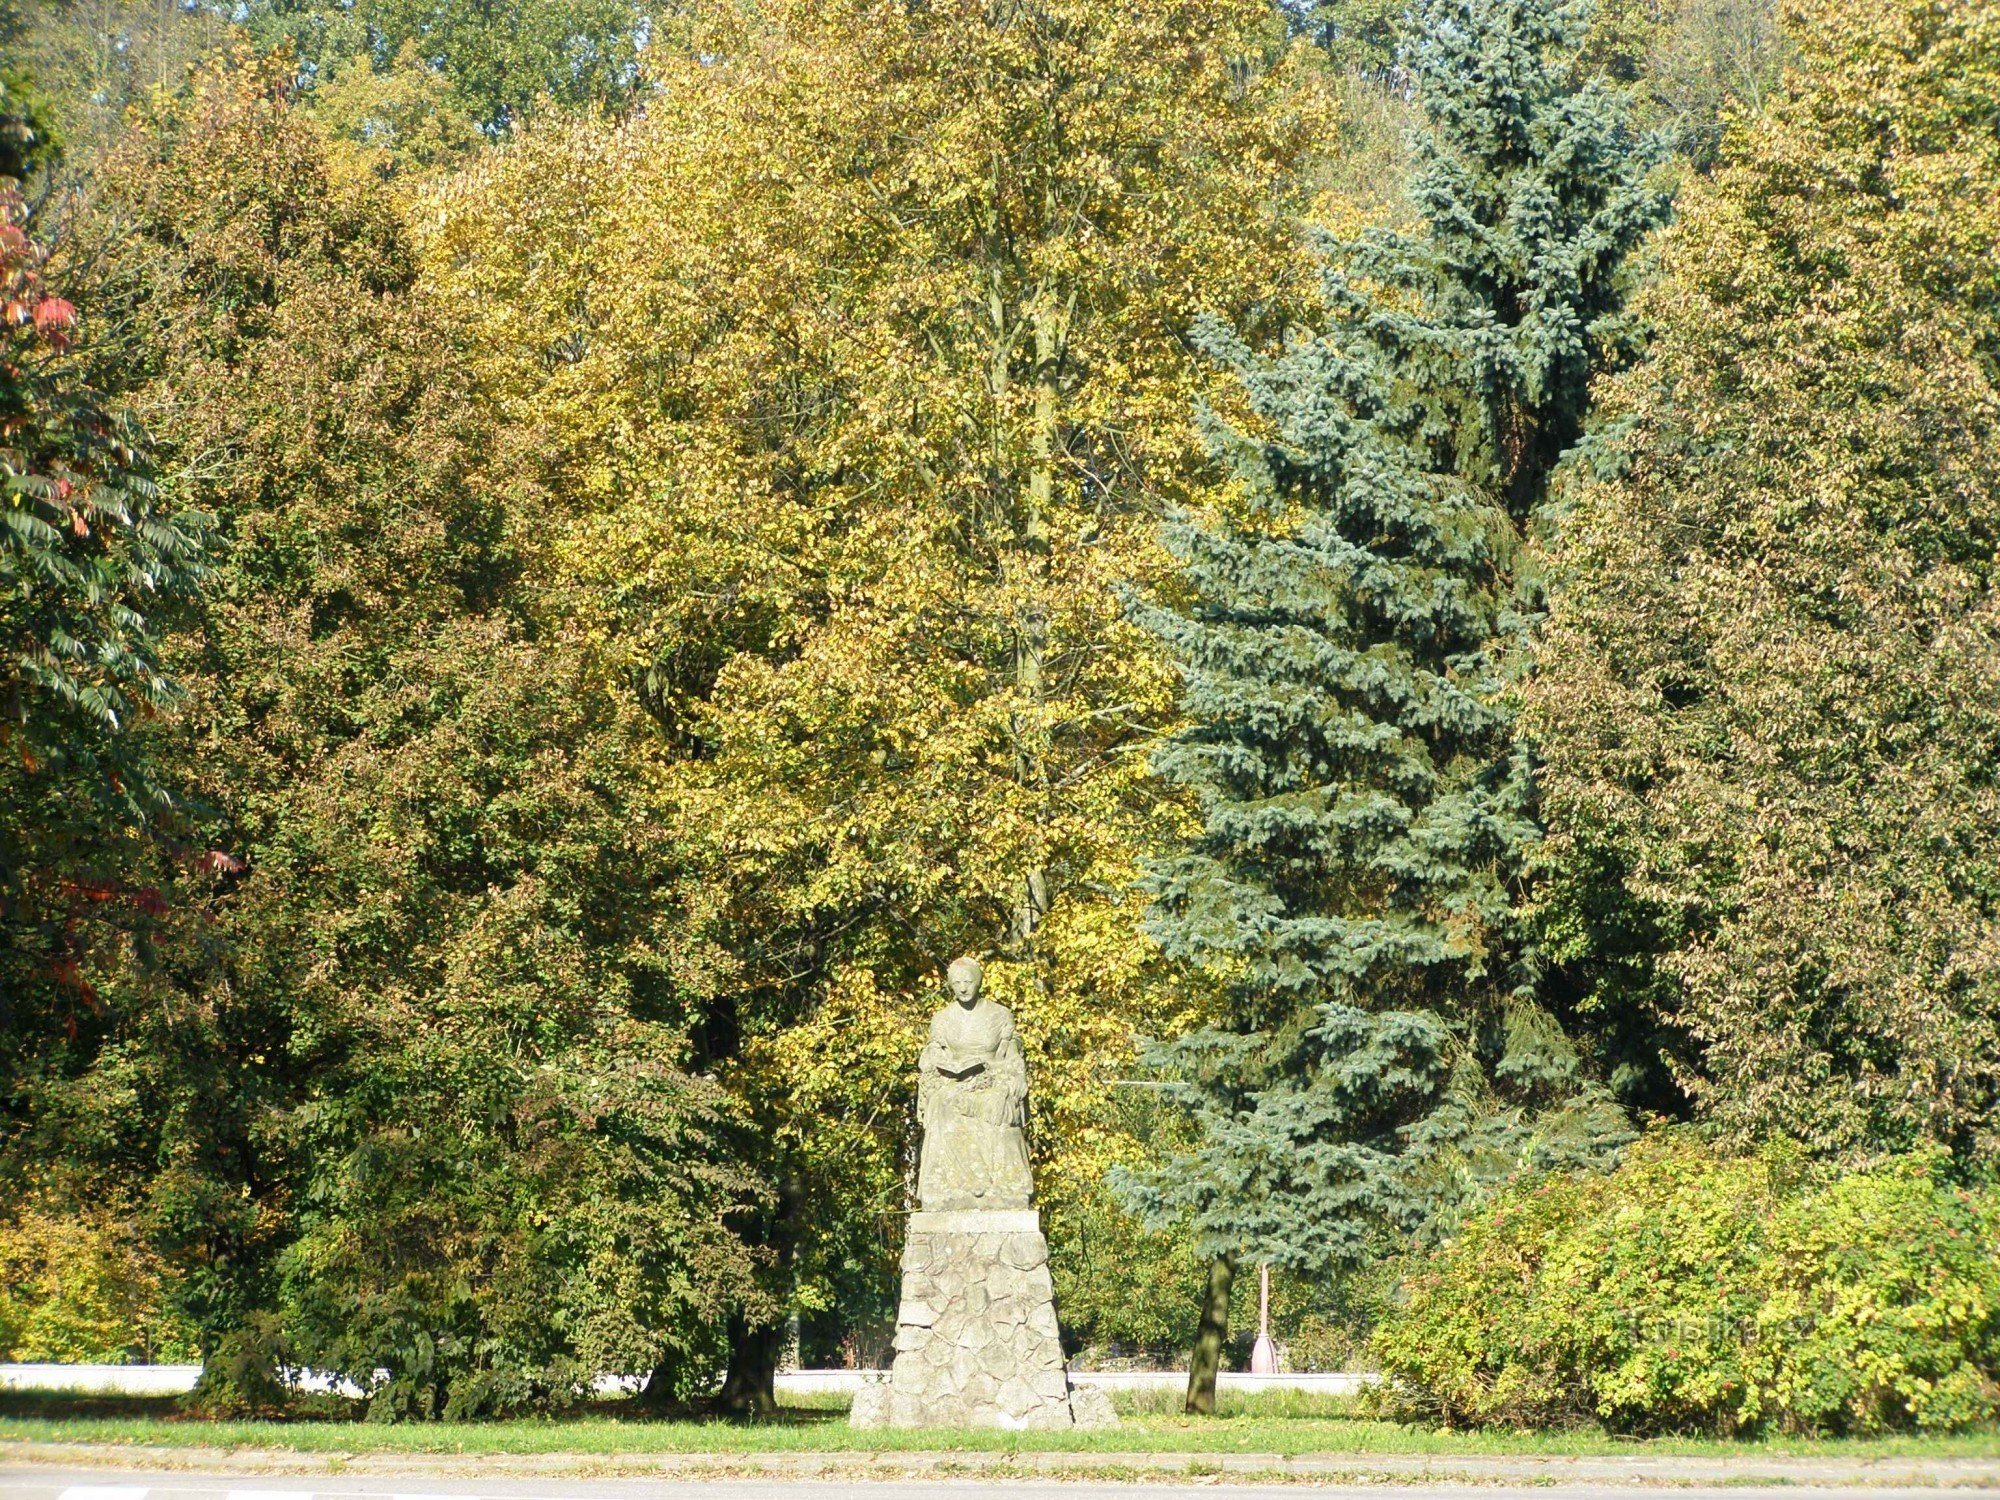 Zlíč - đài tưởng niệm Božena Němcová